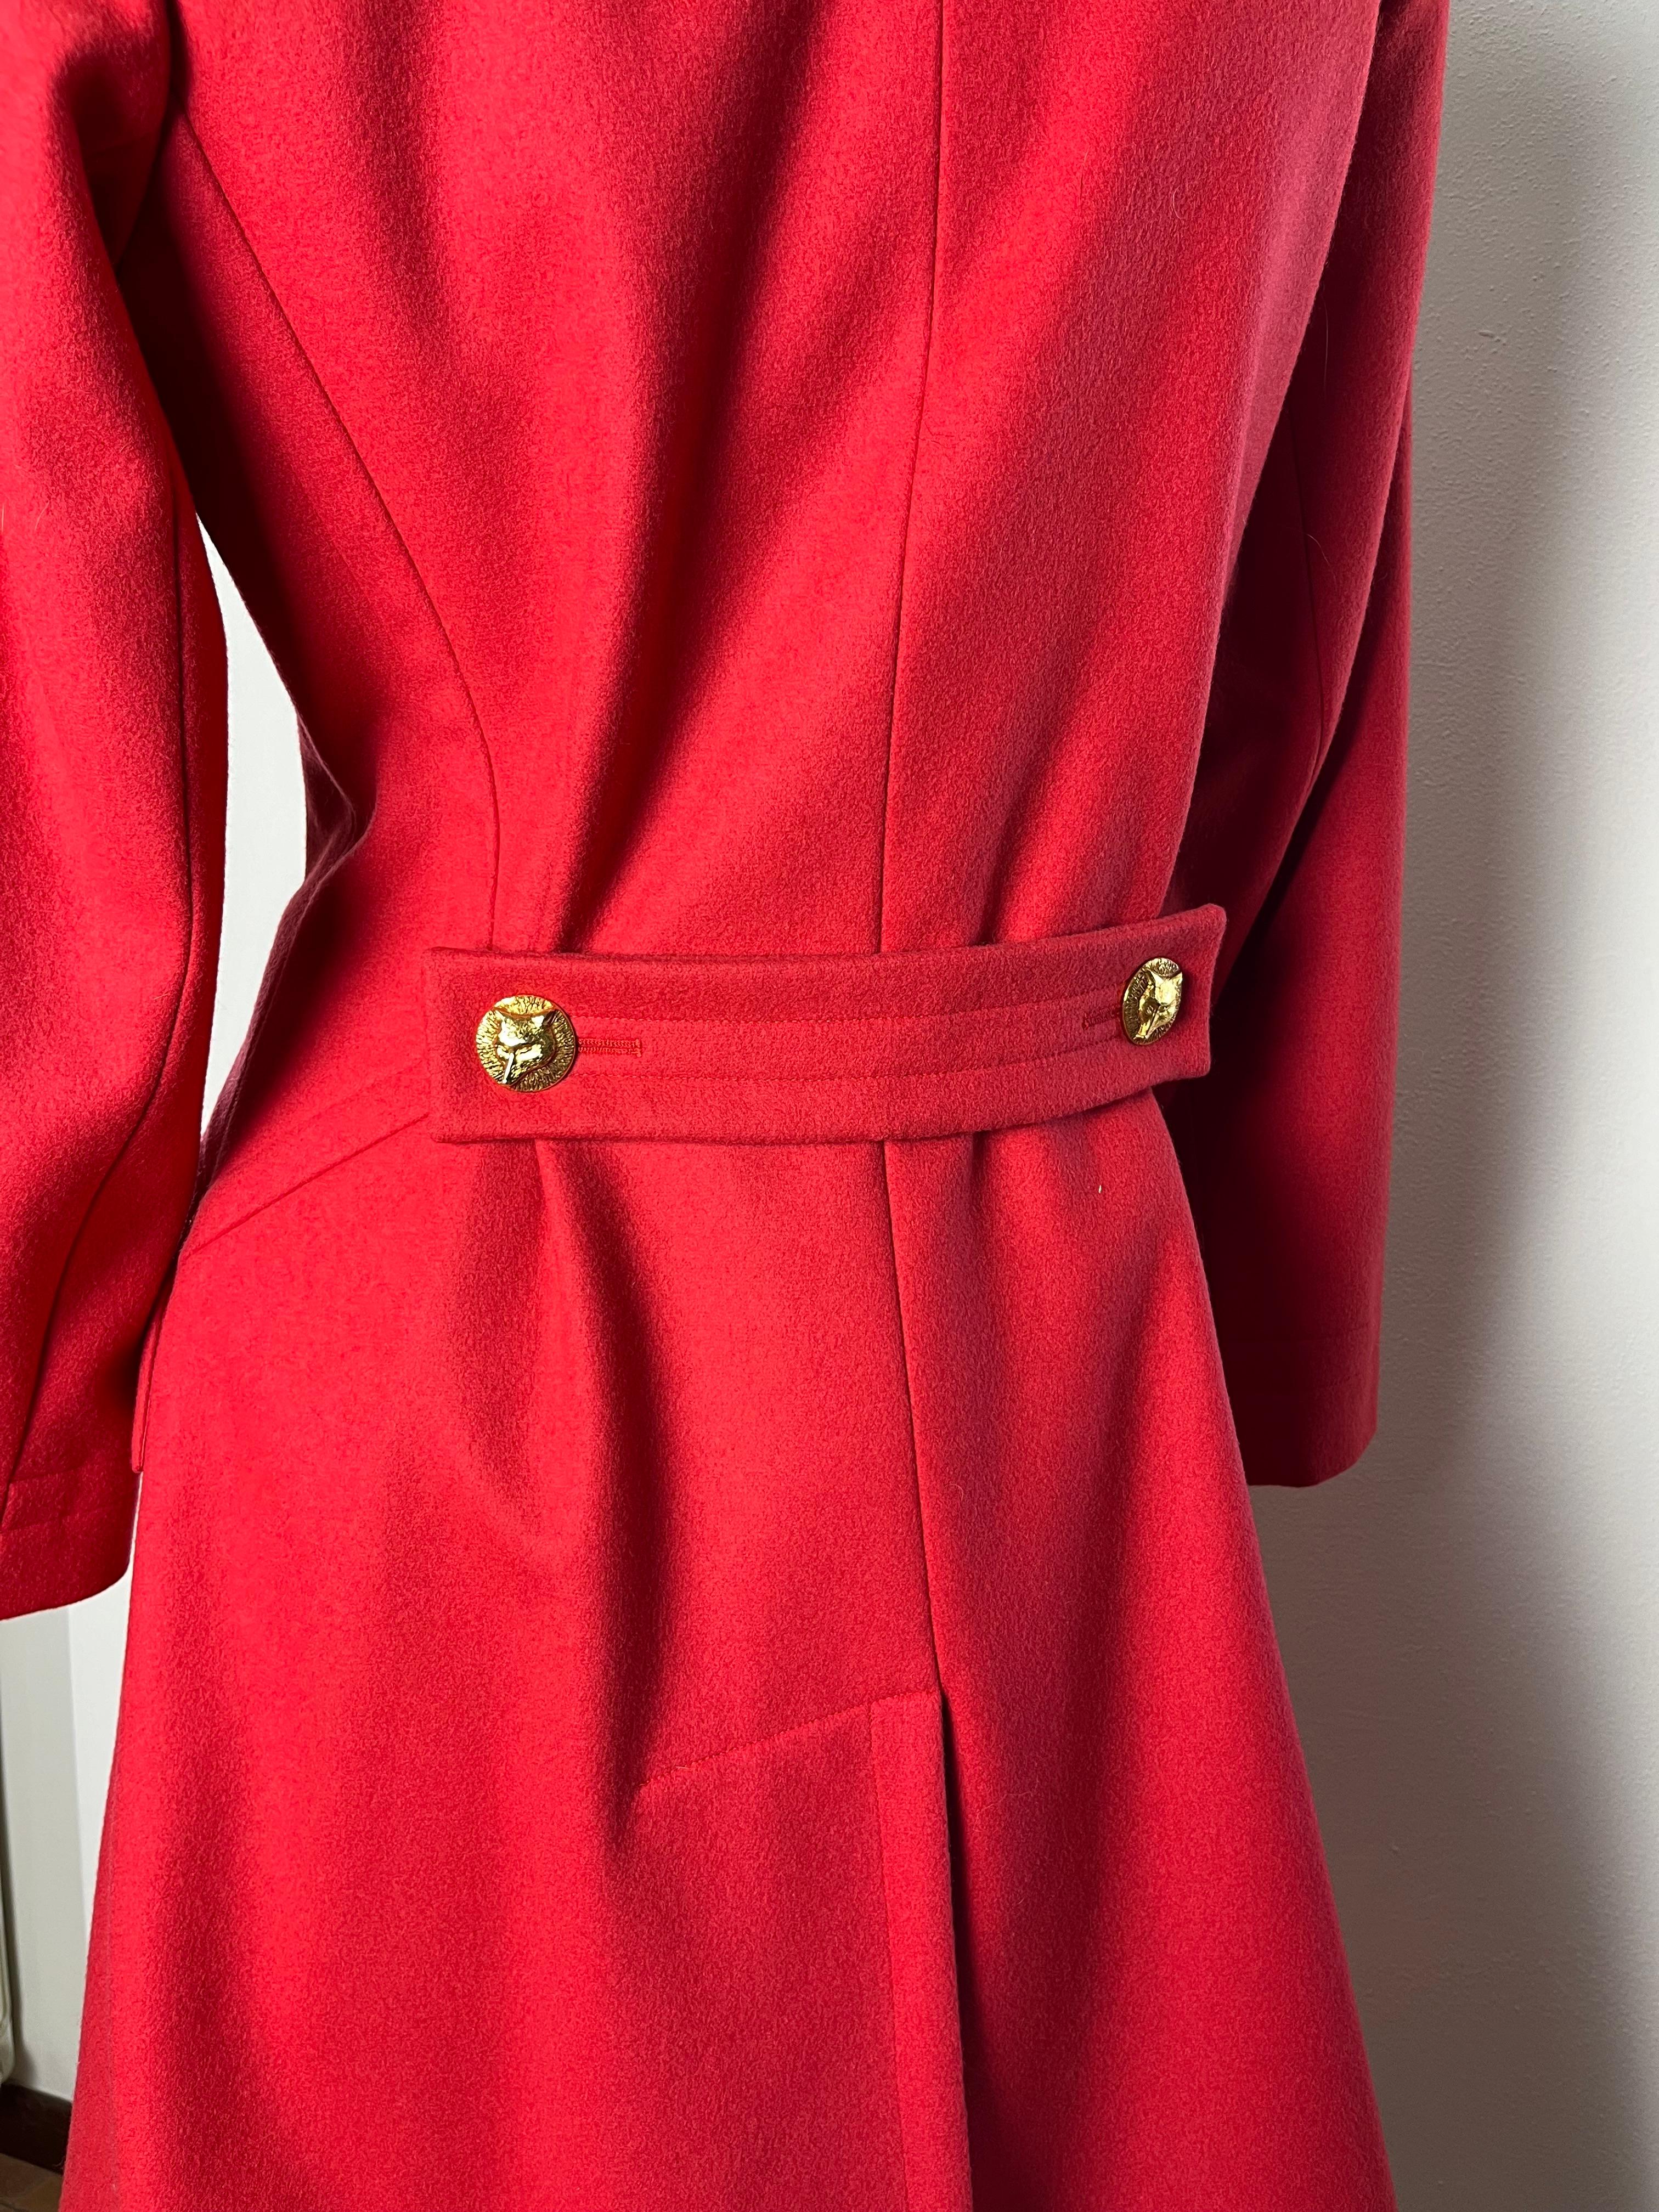 Yves Saint Laurent Haute Couture straordinario e raro cappotto vintage in lana rosso corallo con bottoni dorati gioielli unici incisi con una volpe.
Effetto cut-out et tasche sotto patta, foderato-petto, maniche lunghe, martingale e spacco